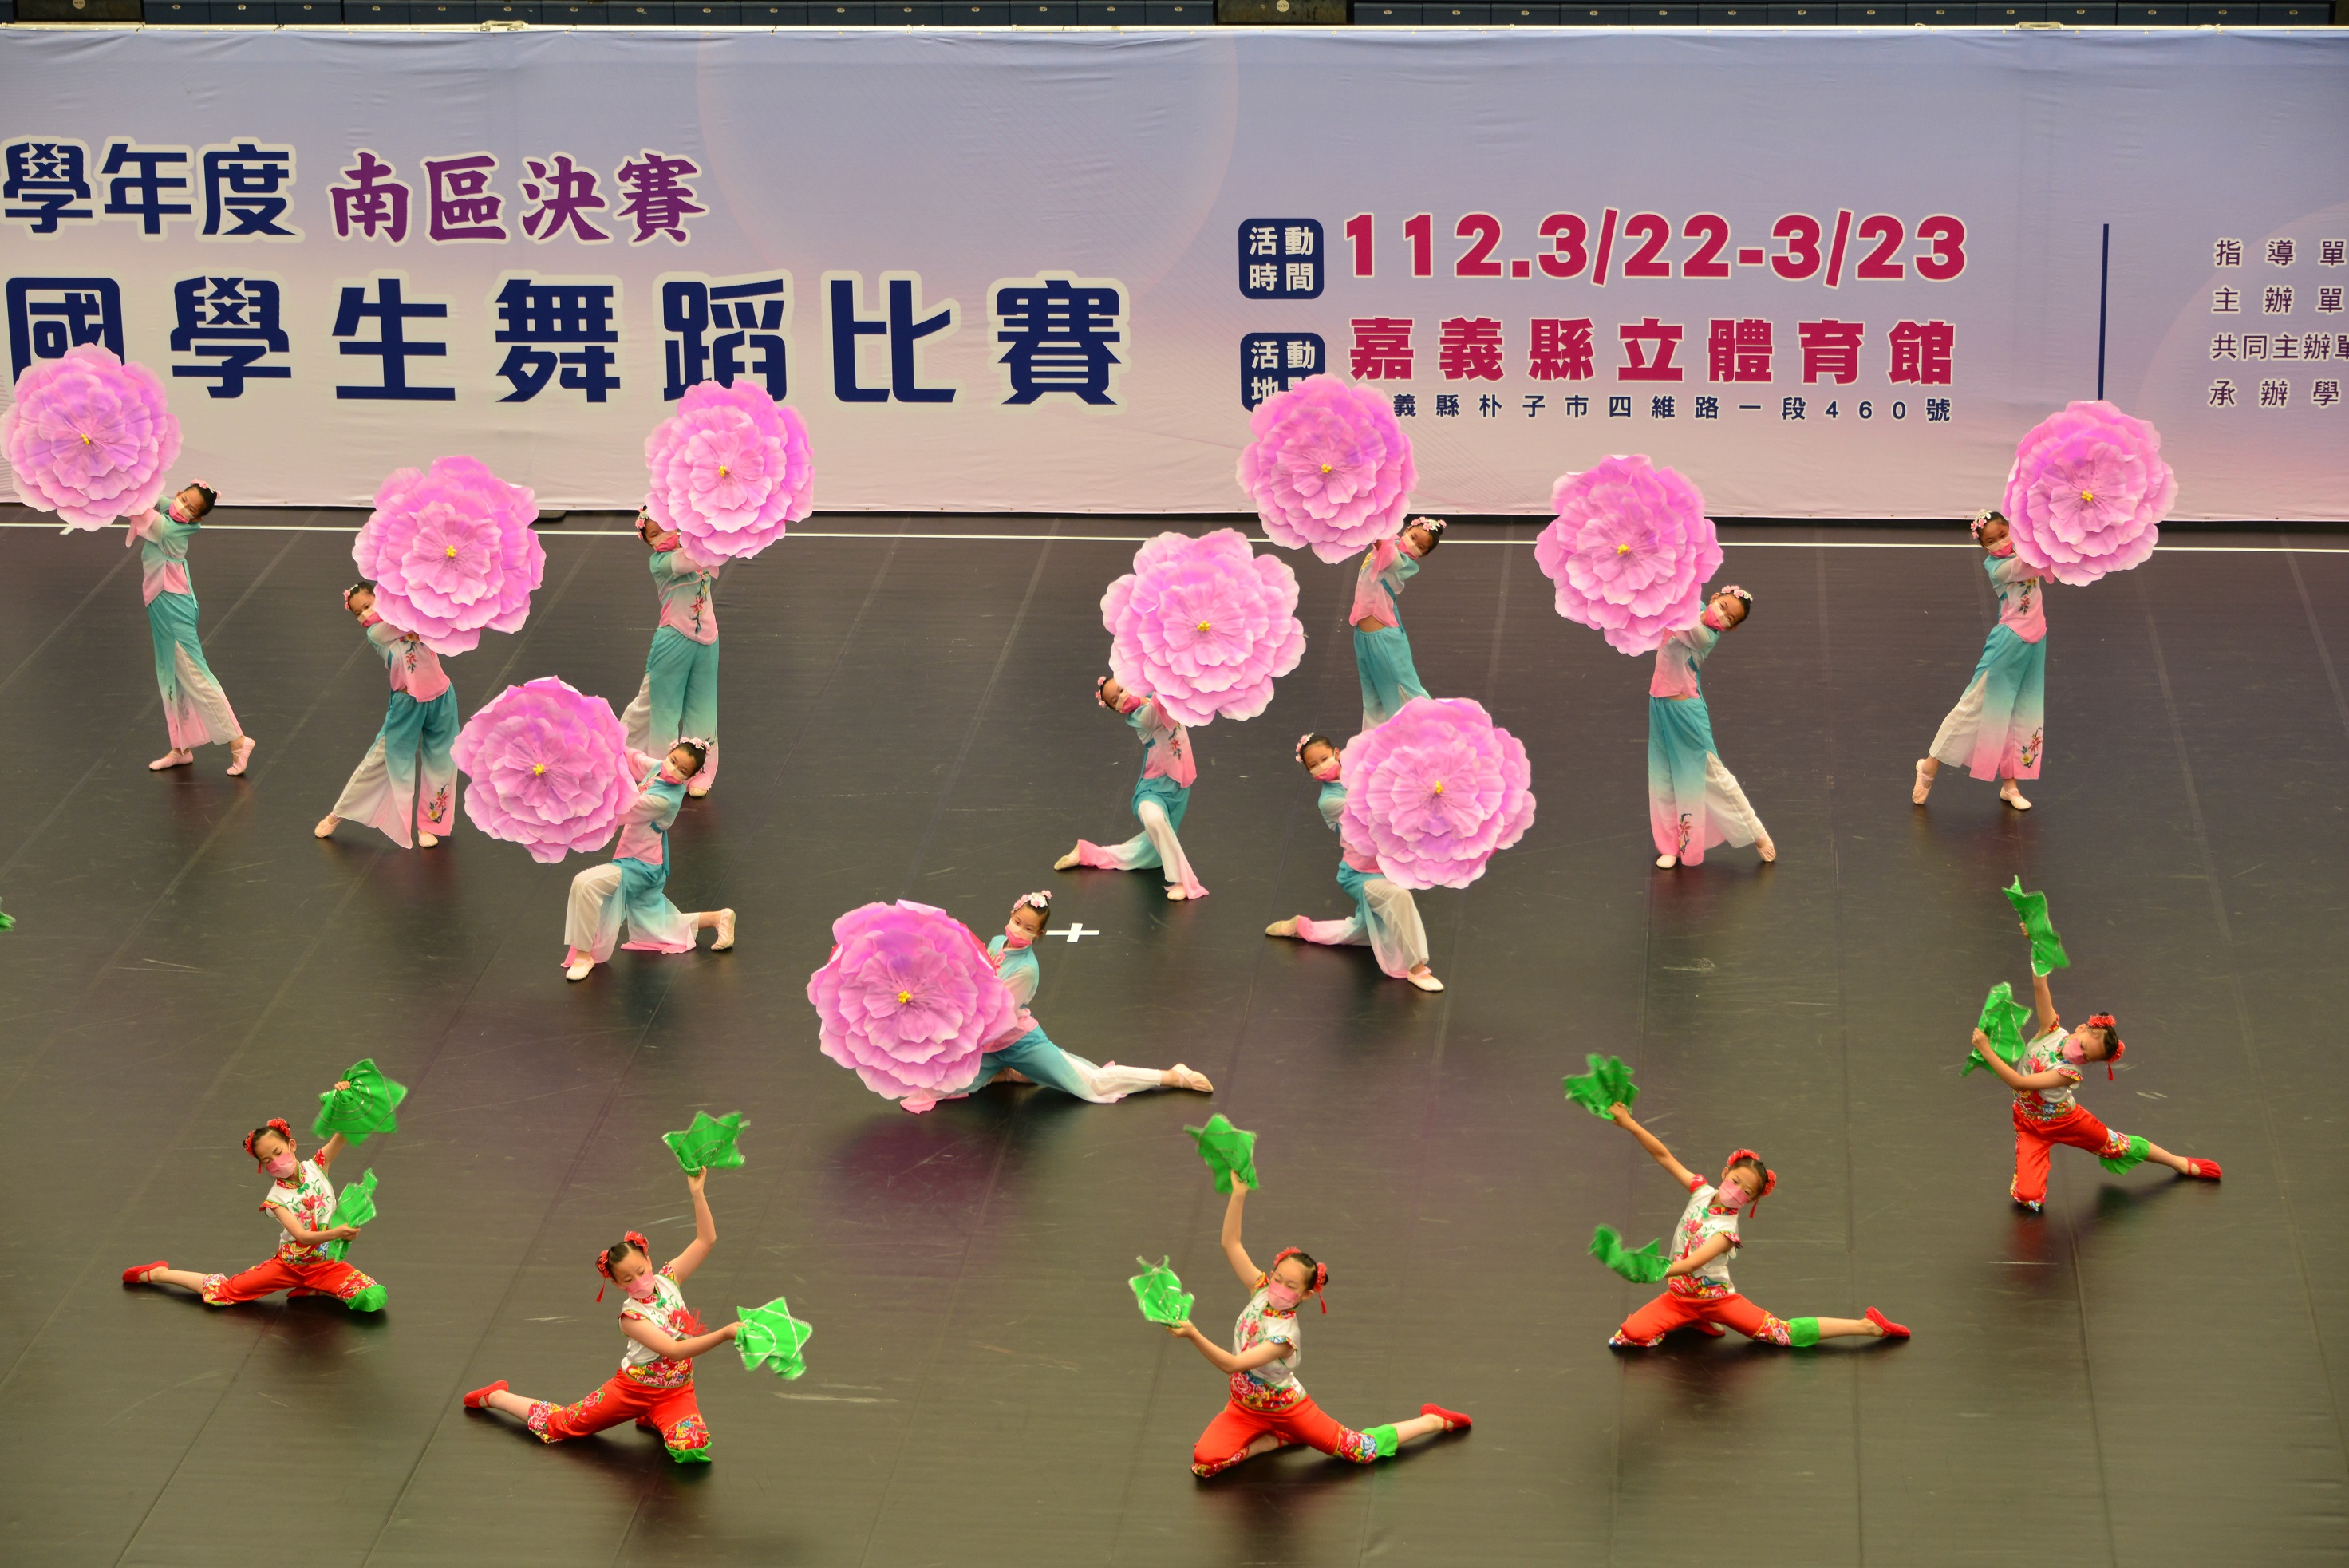 臺南學子「好舞力」!全國舞蹈比賽榮獲團體特優14隊 個人特優3人